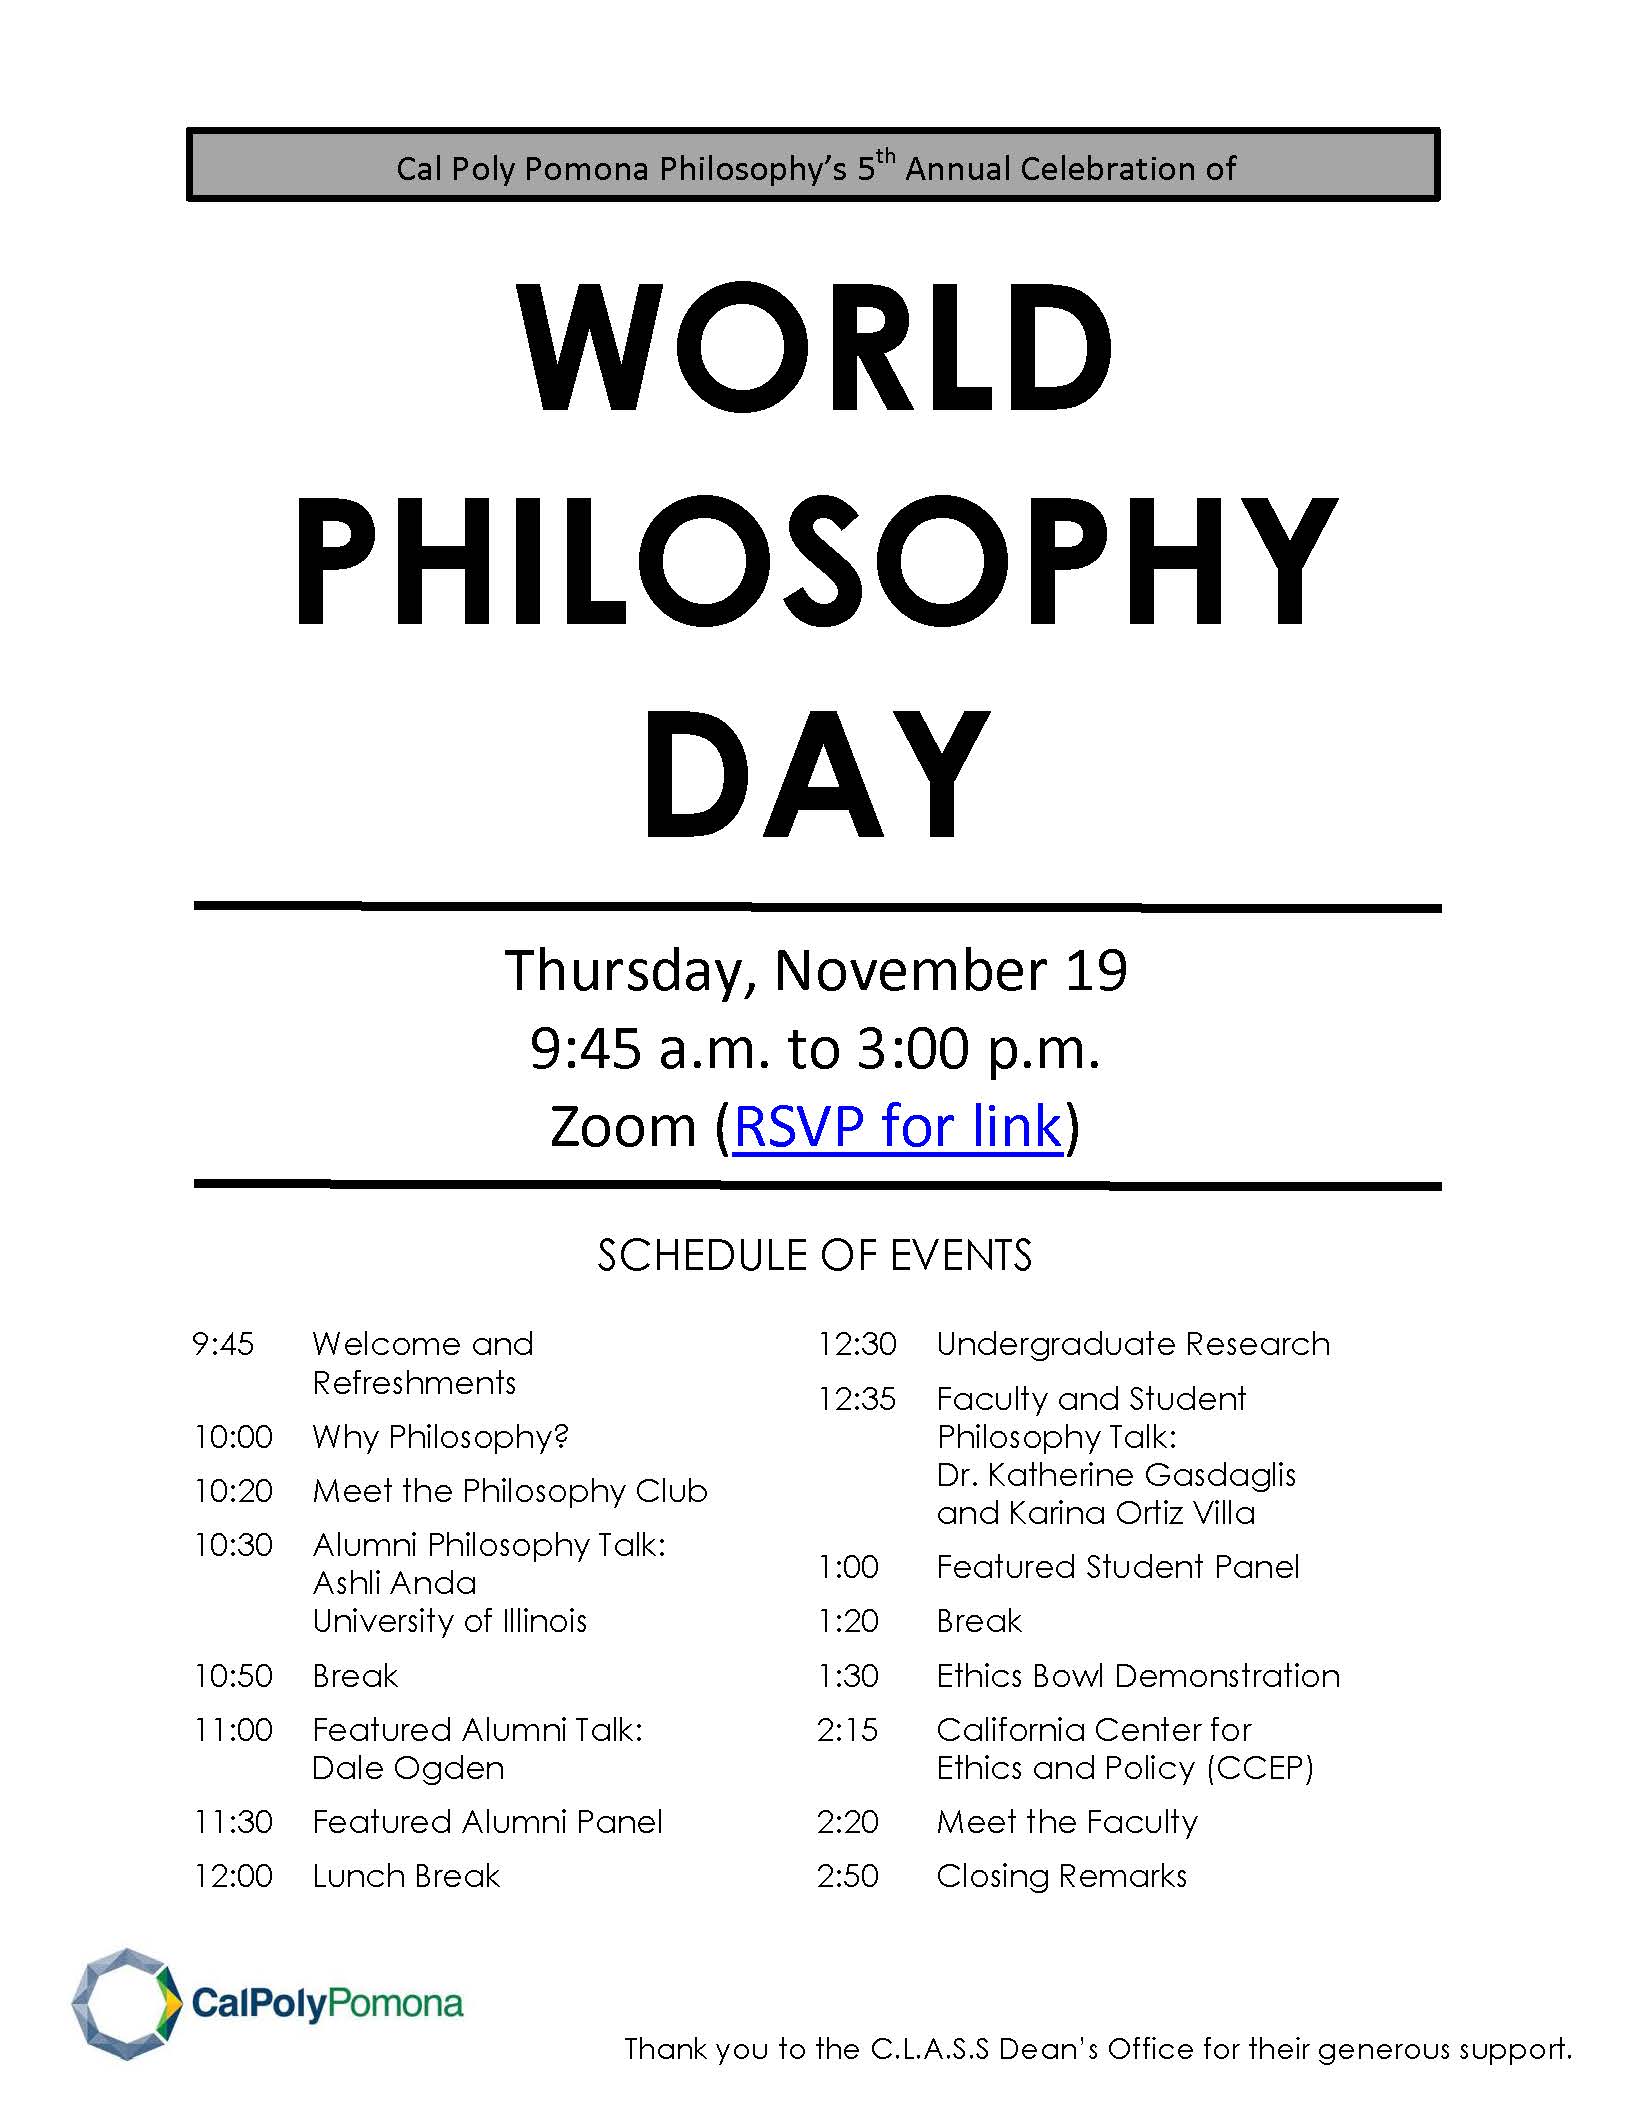 World Philosophy Day 2020 Schedule